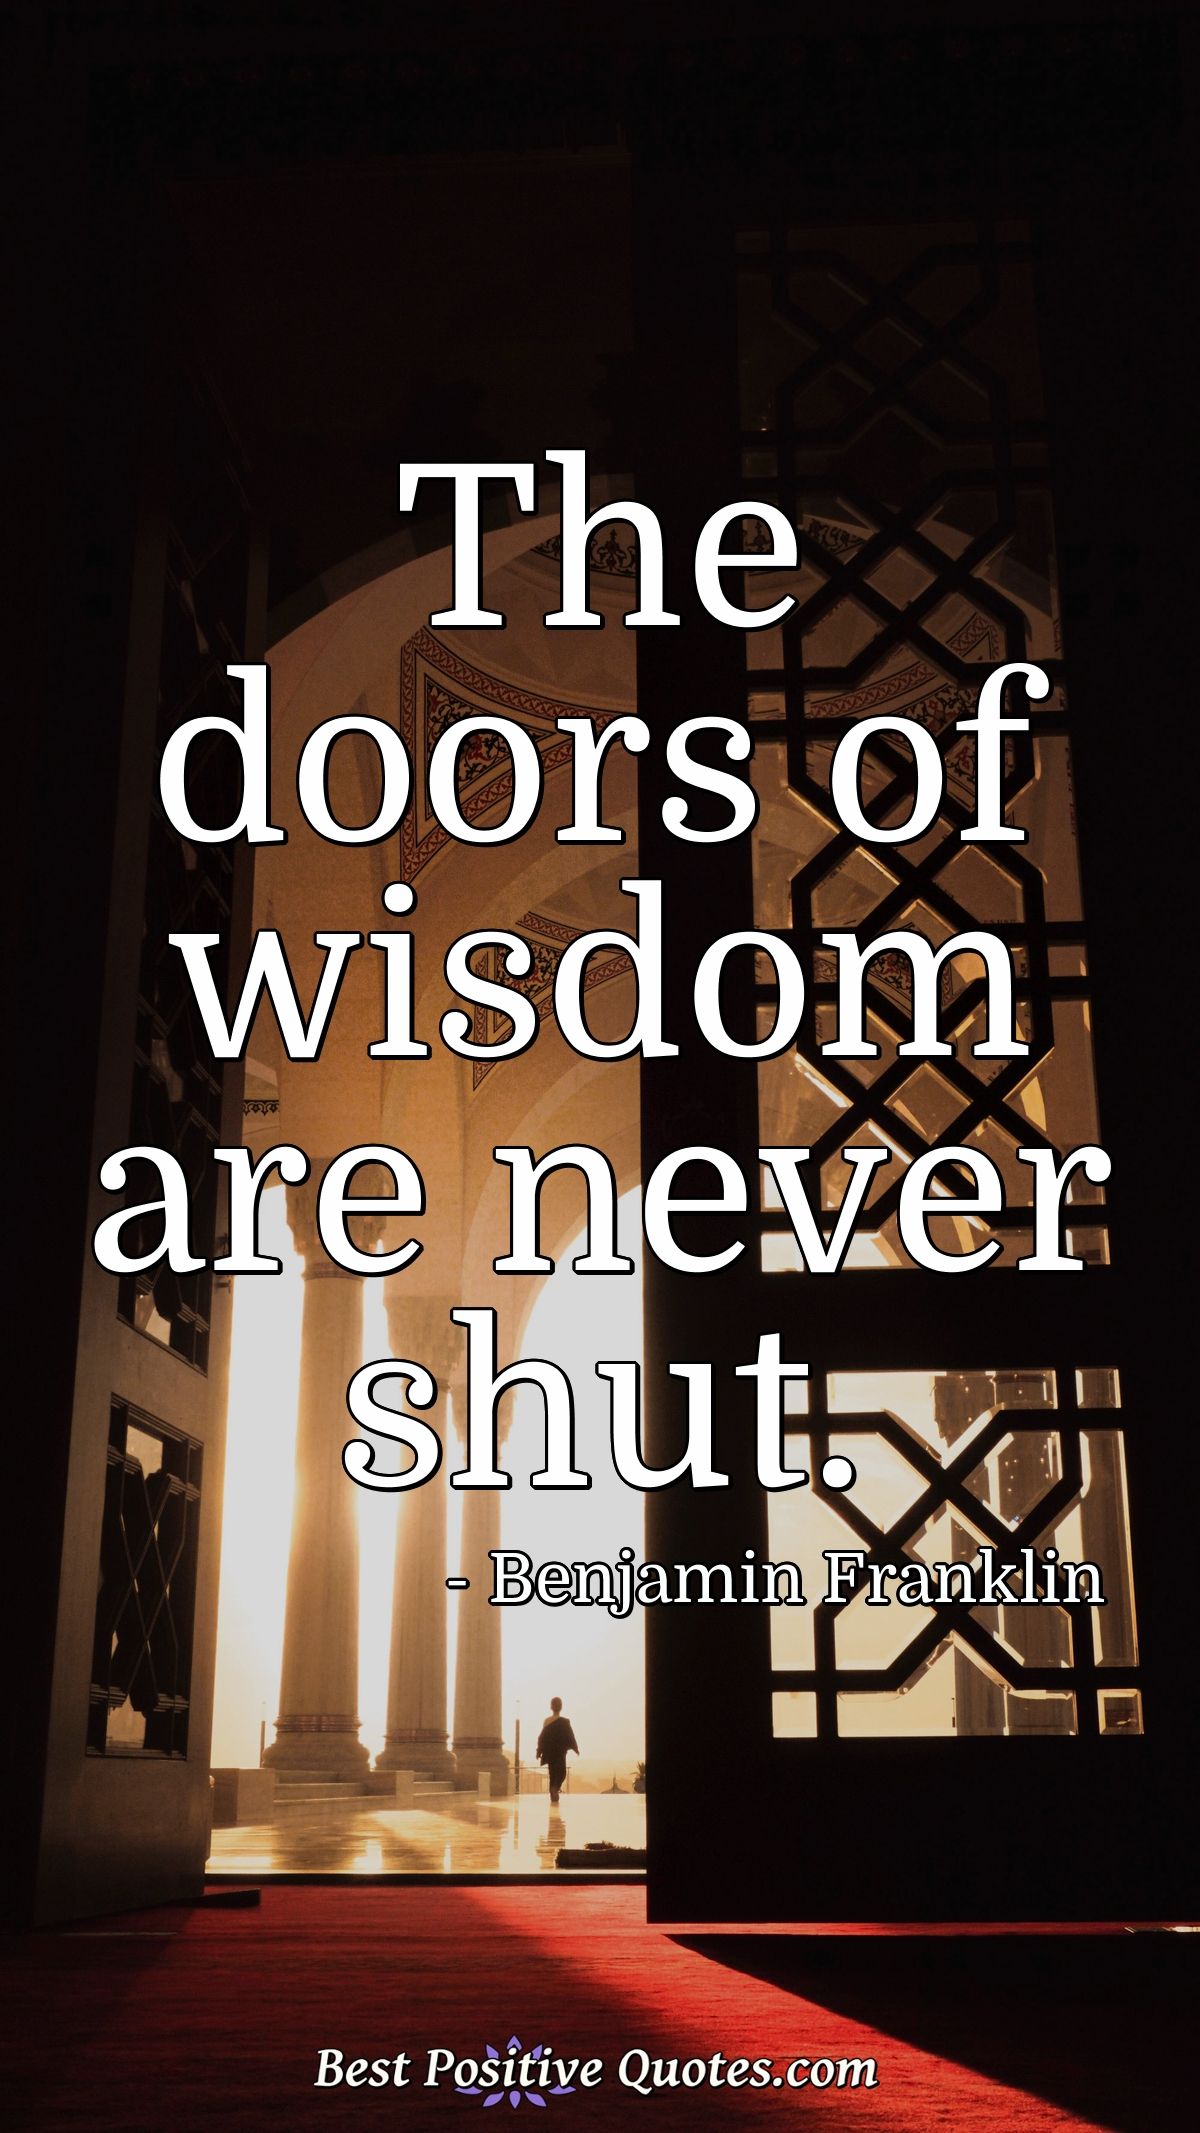 The doors of wisdom are never shut. - Benjamin Franklin